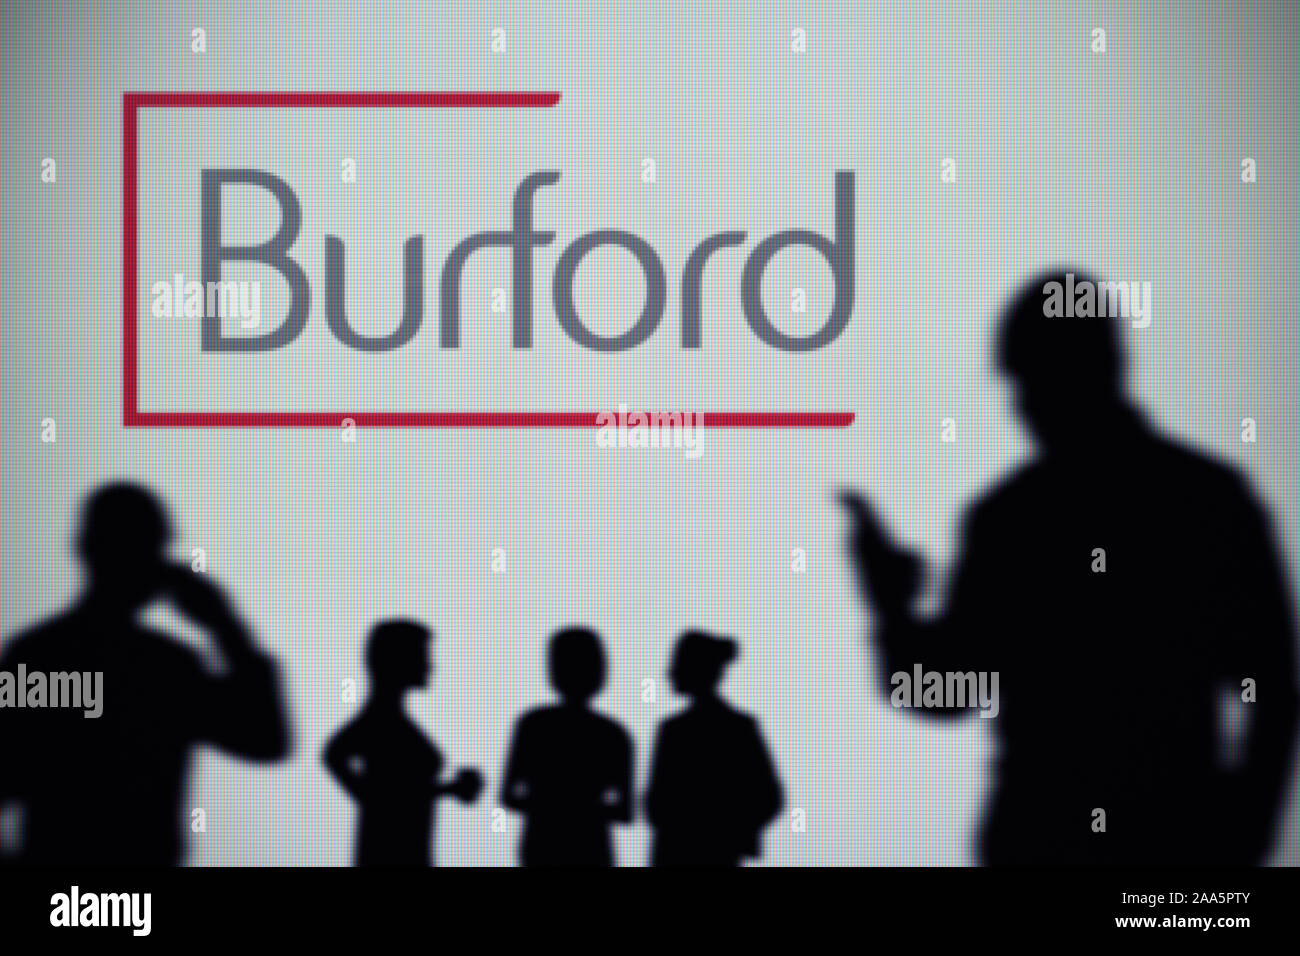 La capitale a Burford logo è visibile su uno schermo a LED in background mentre si profila una persona utilizza uno smartphone (solo uso editoriale) Foto Stock